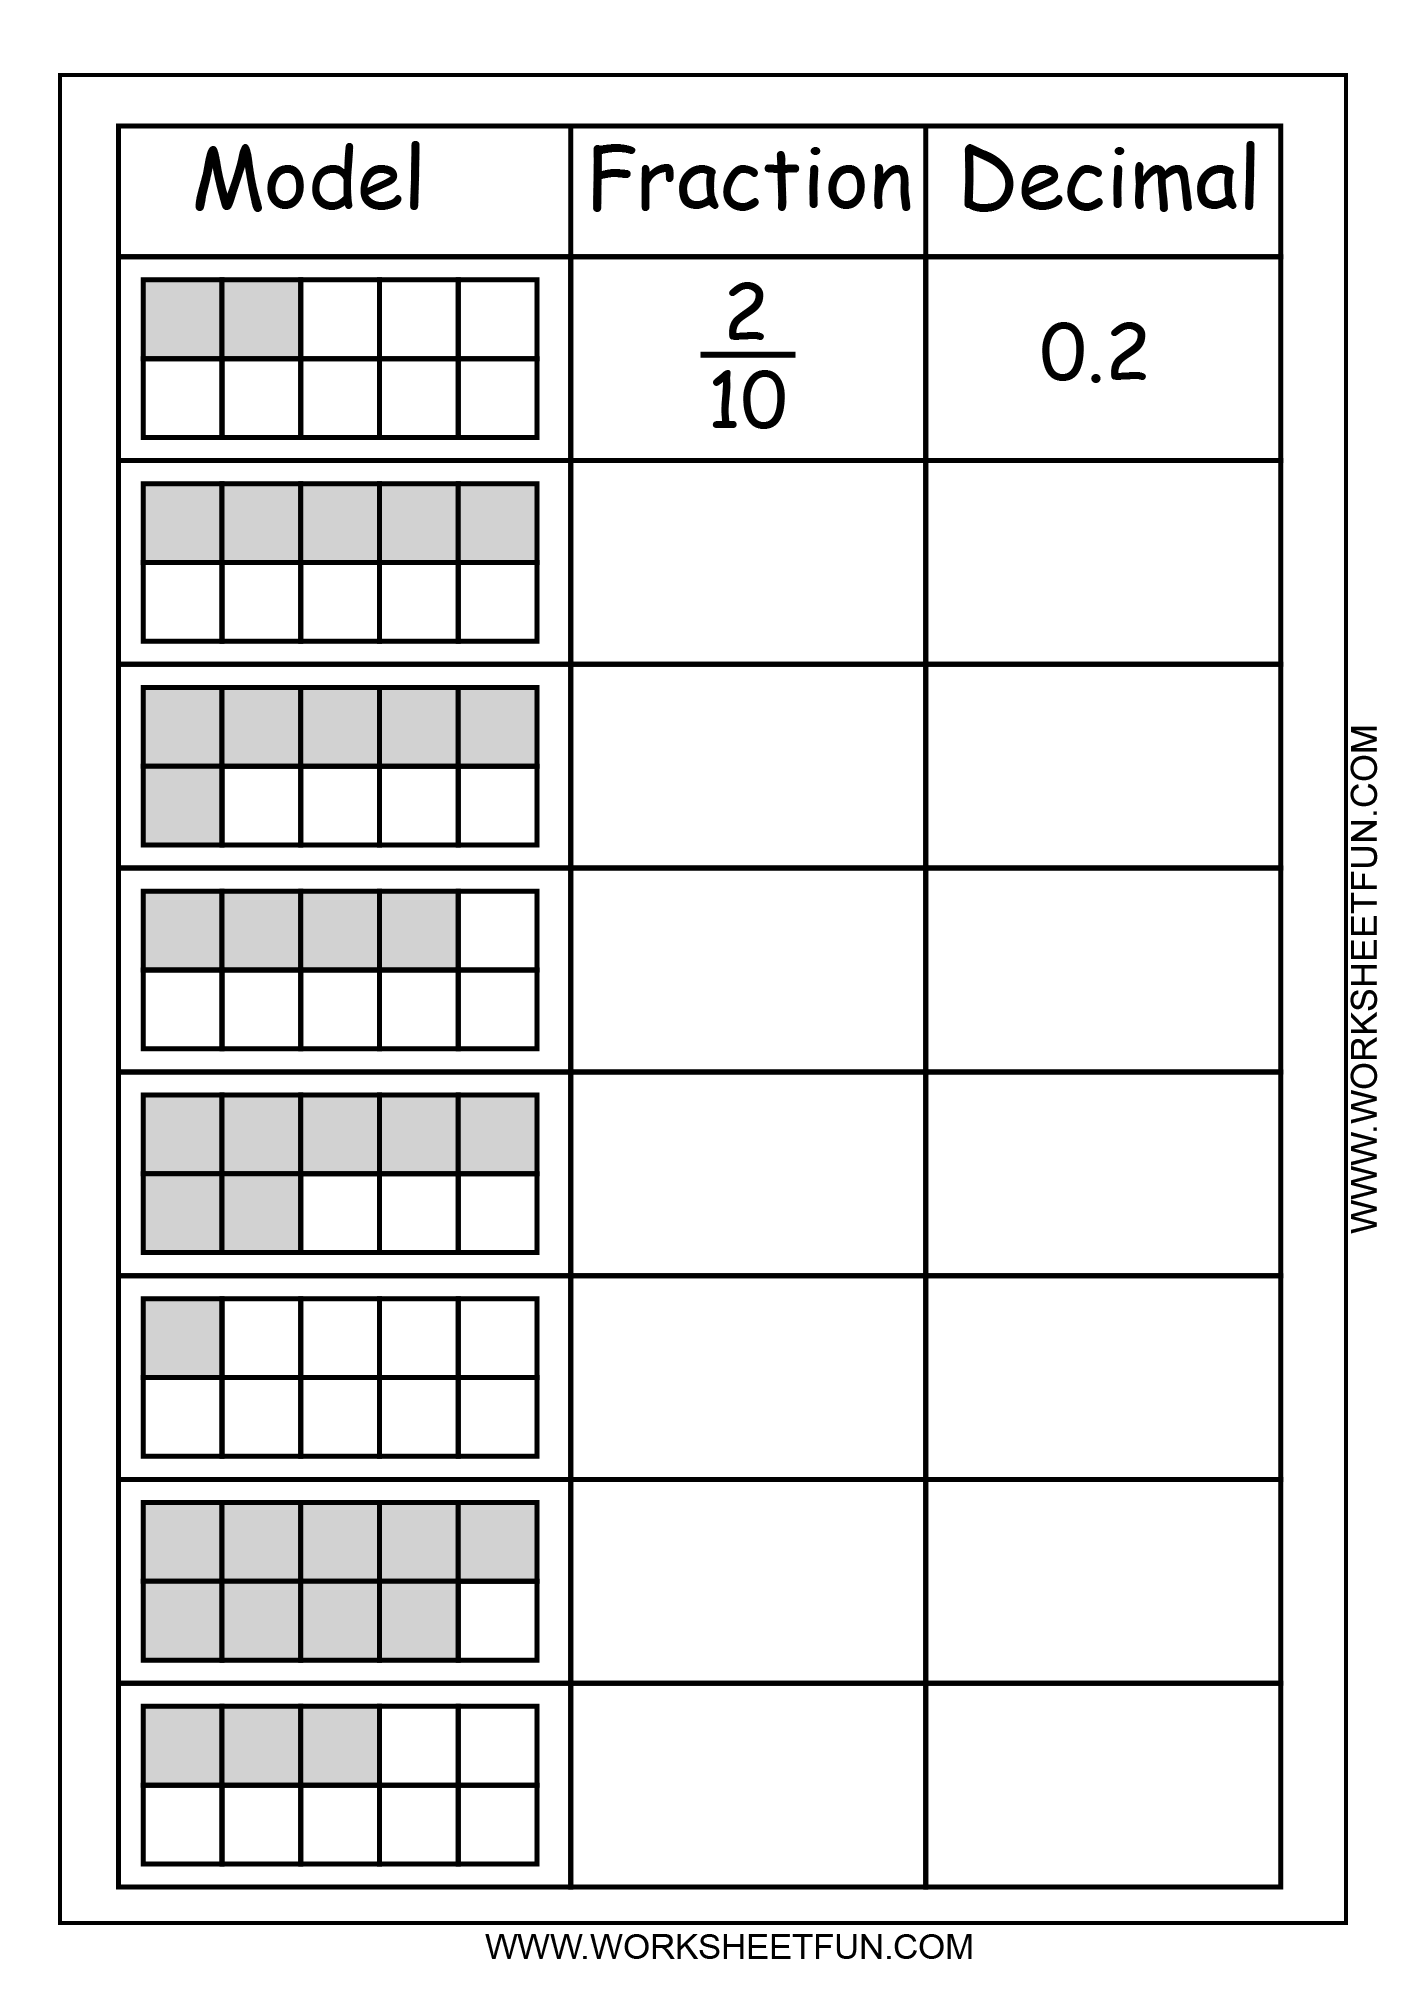 decimal-to-fraction-worksheet-fraction-decimal-convert-sheet-decimals